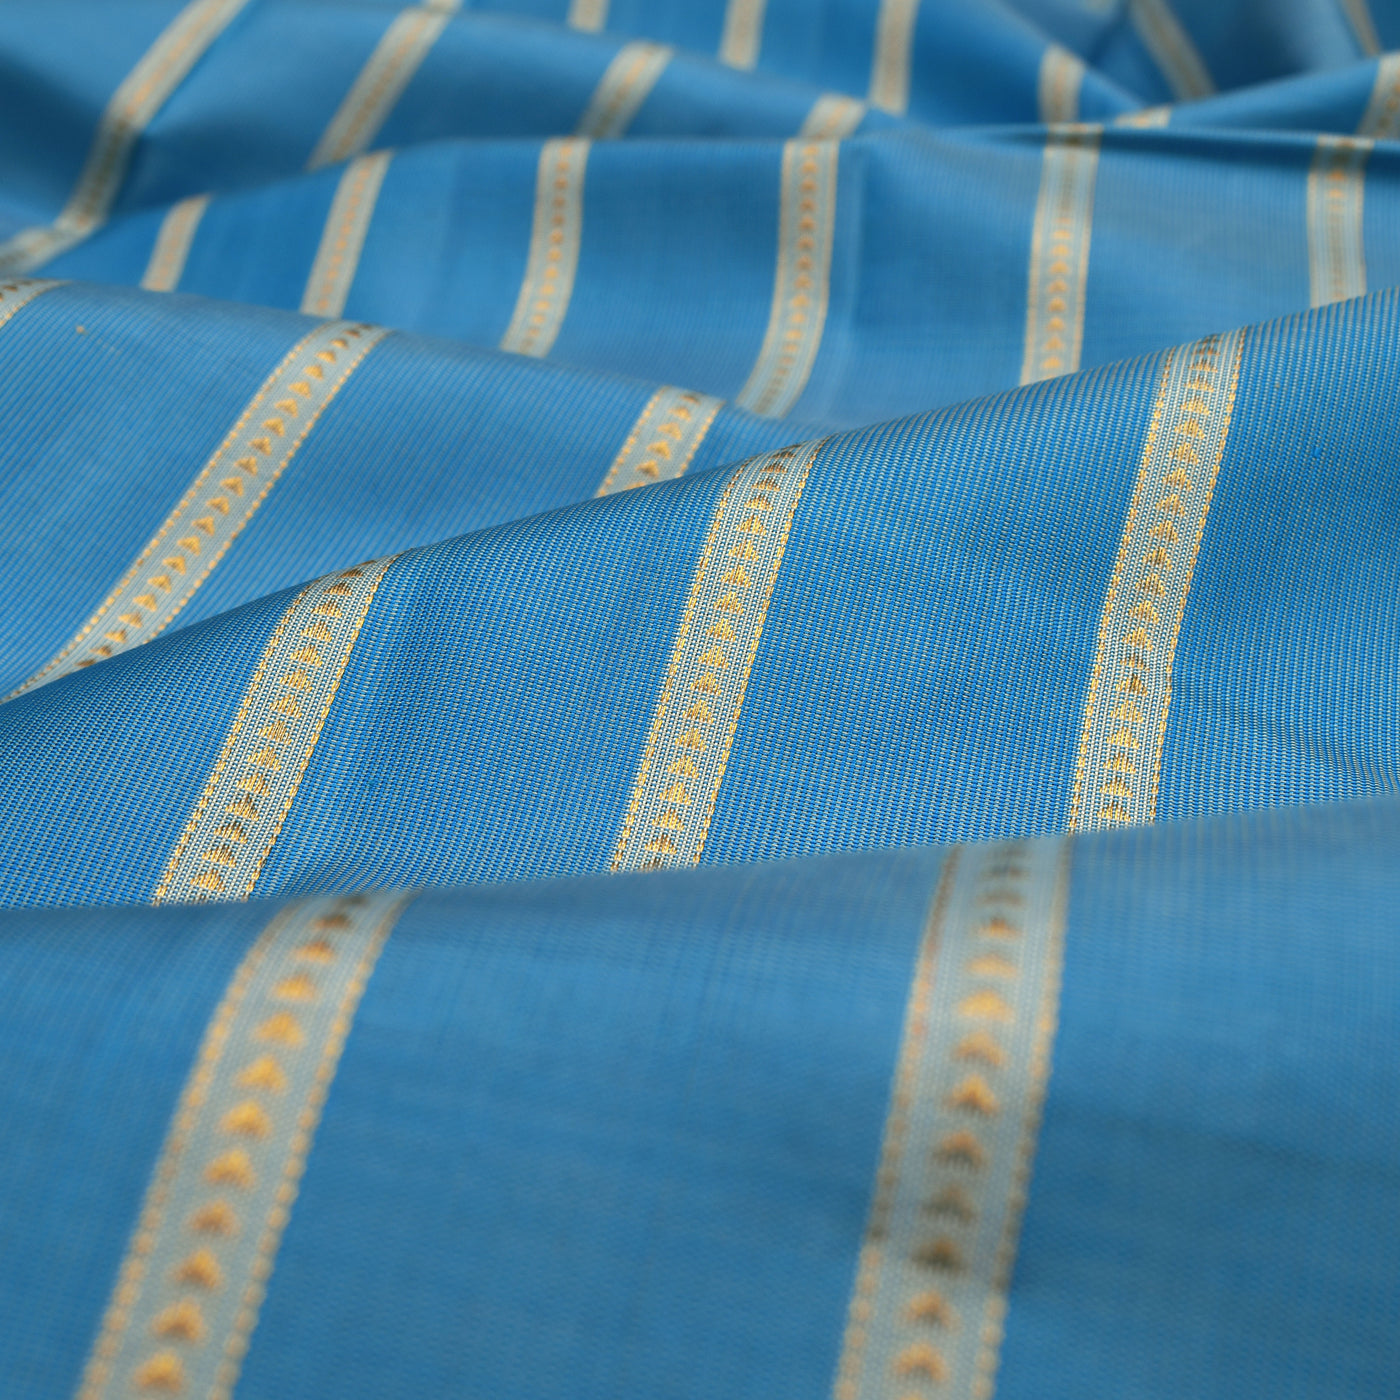 Tussar Anandha Kanchi Silk Fabric with Kathir Lines Design